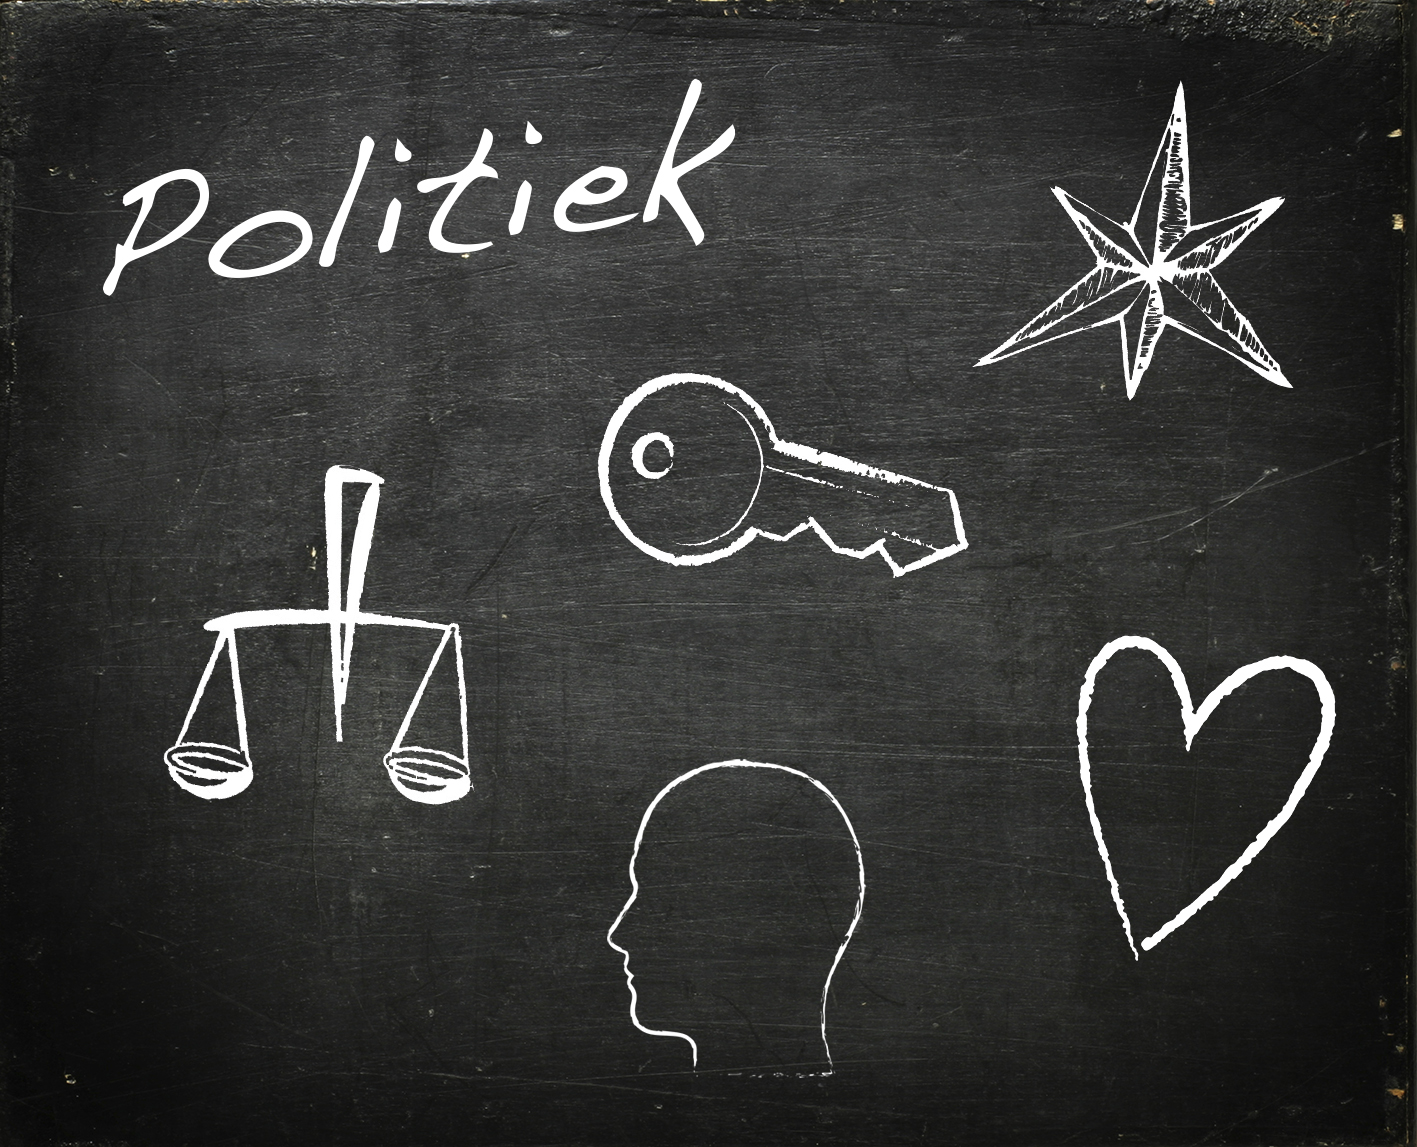 modarium schoolbord voor politiek met symbolen